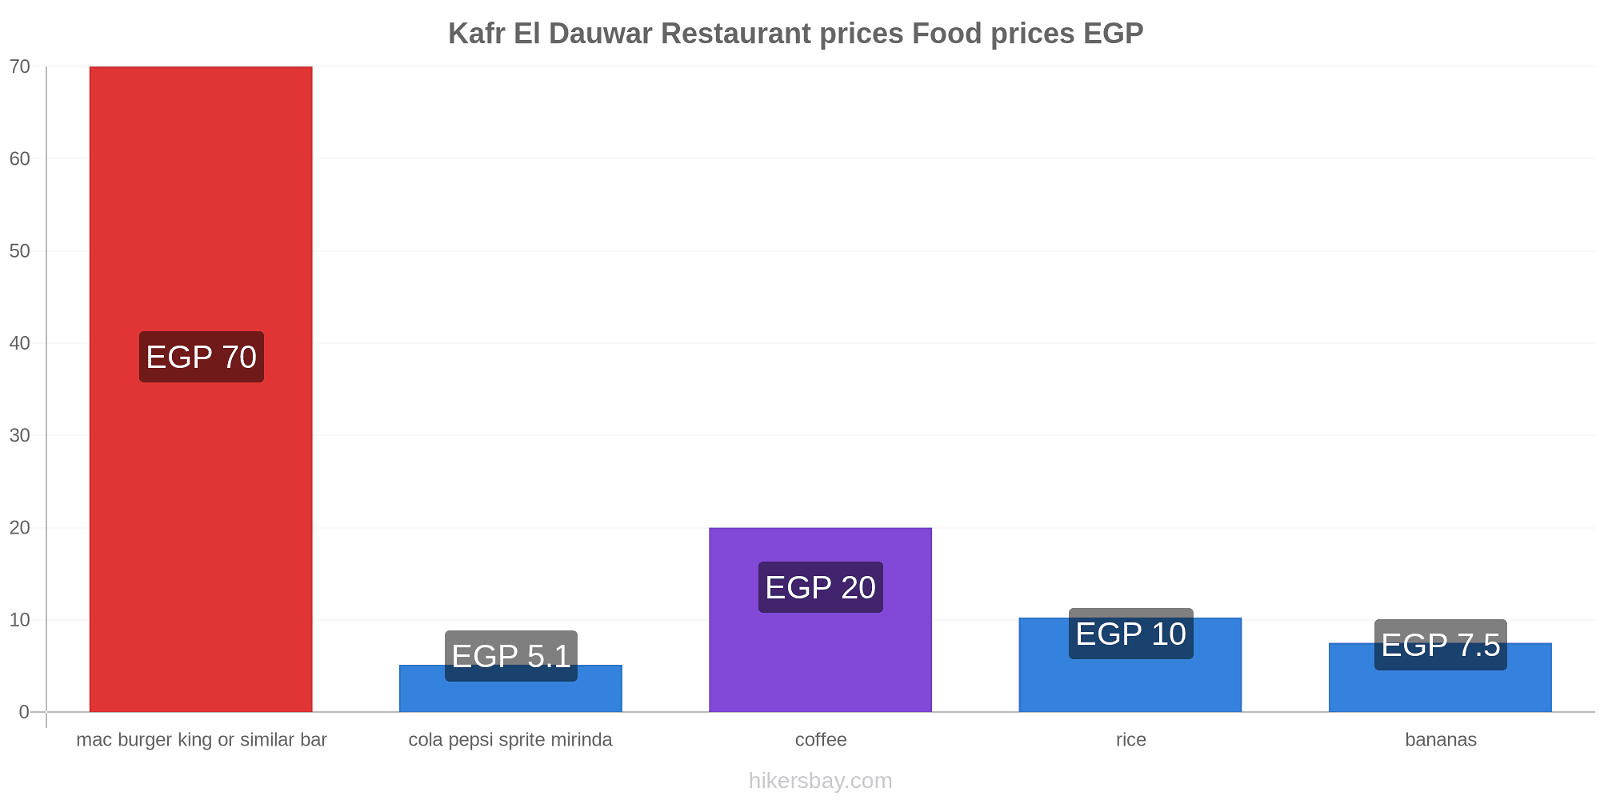 Kafr El Dauwar price changes hikersbay.com